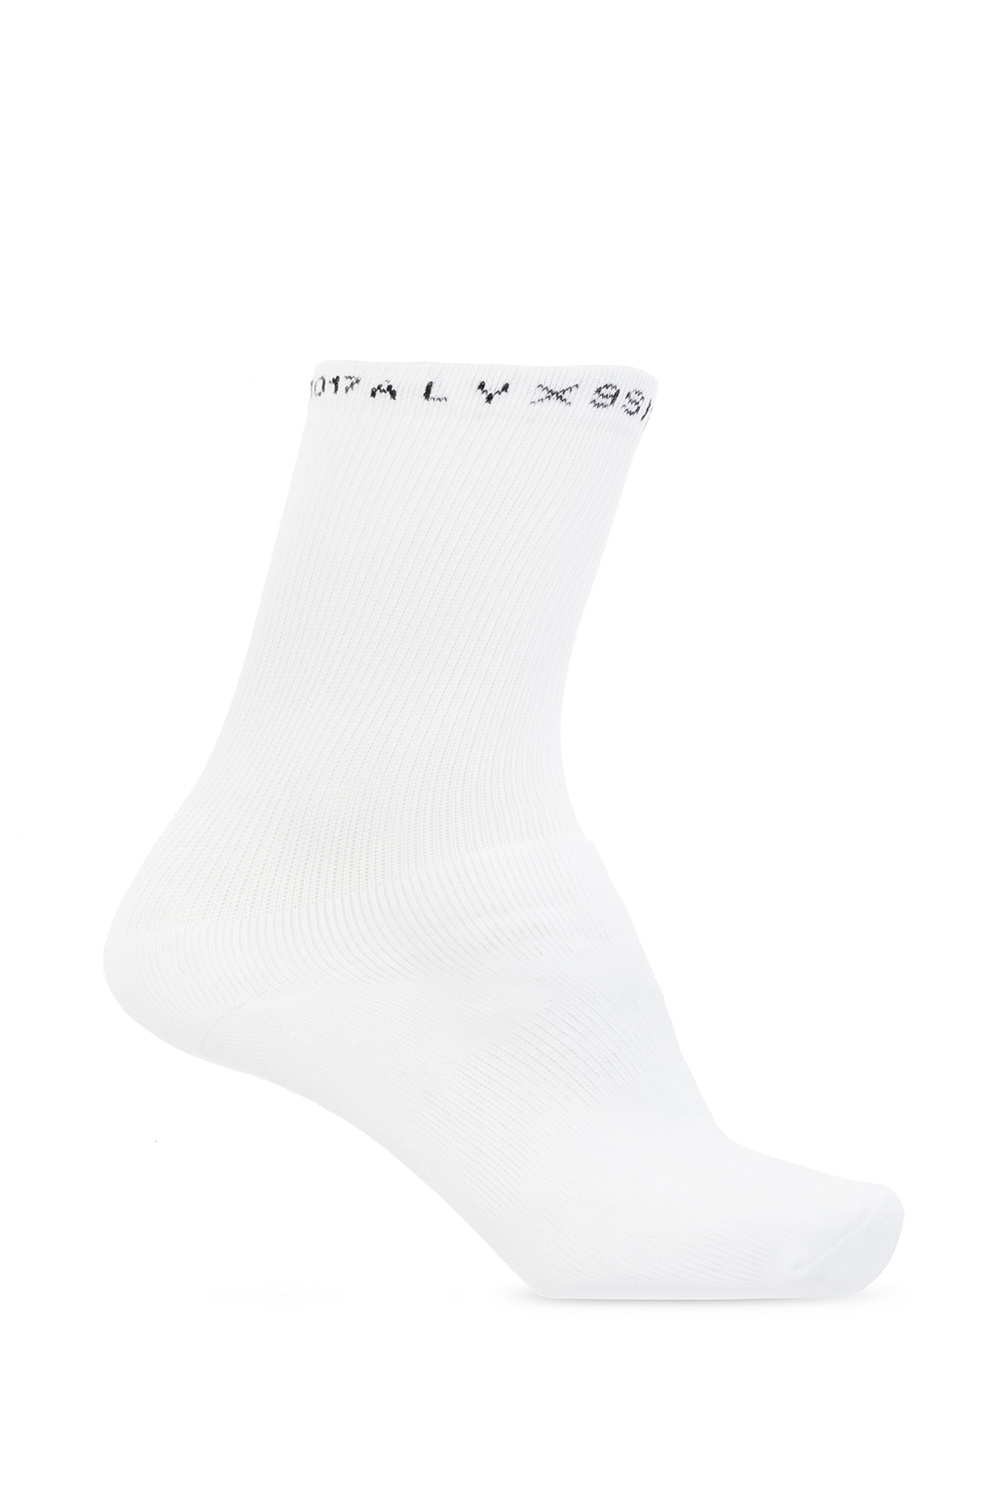 Branded socks three-pack 1017 ALYX 9SM - Vitkac Norway